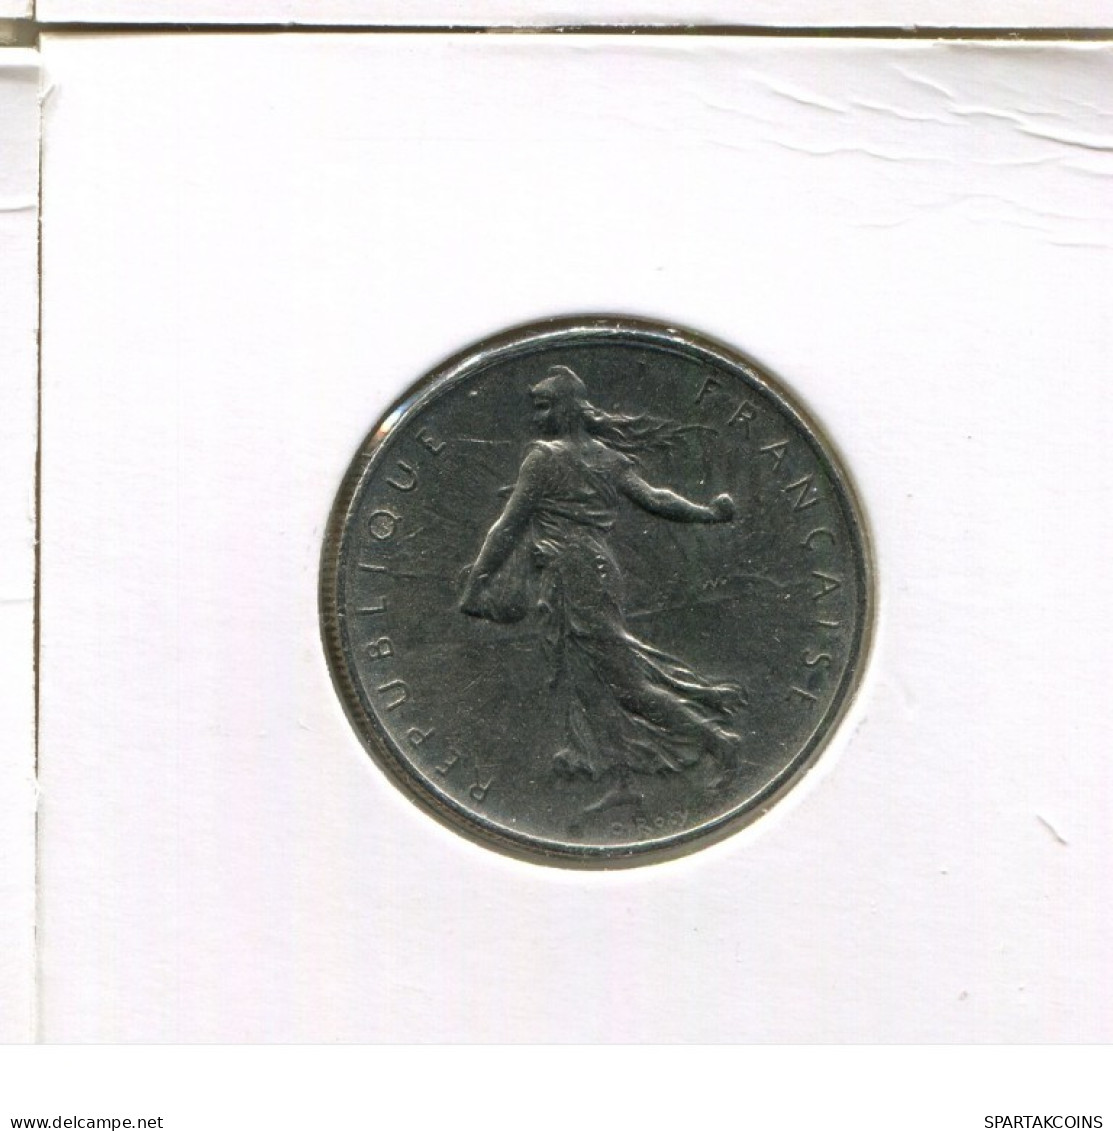 1 FRANC 1969 FRANCE Coin French Coin #AK531.U.A - 1 Franc